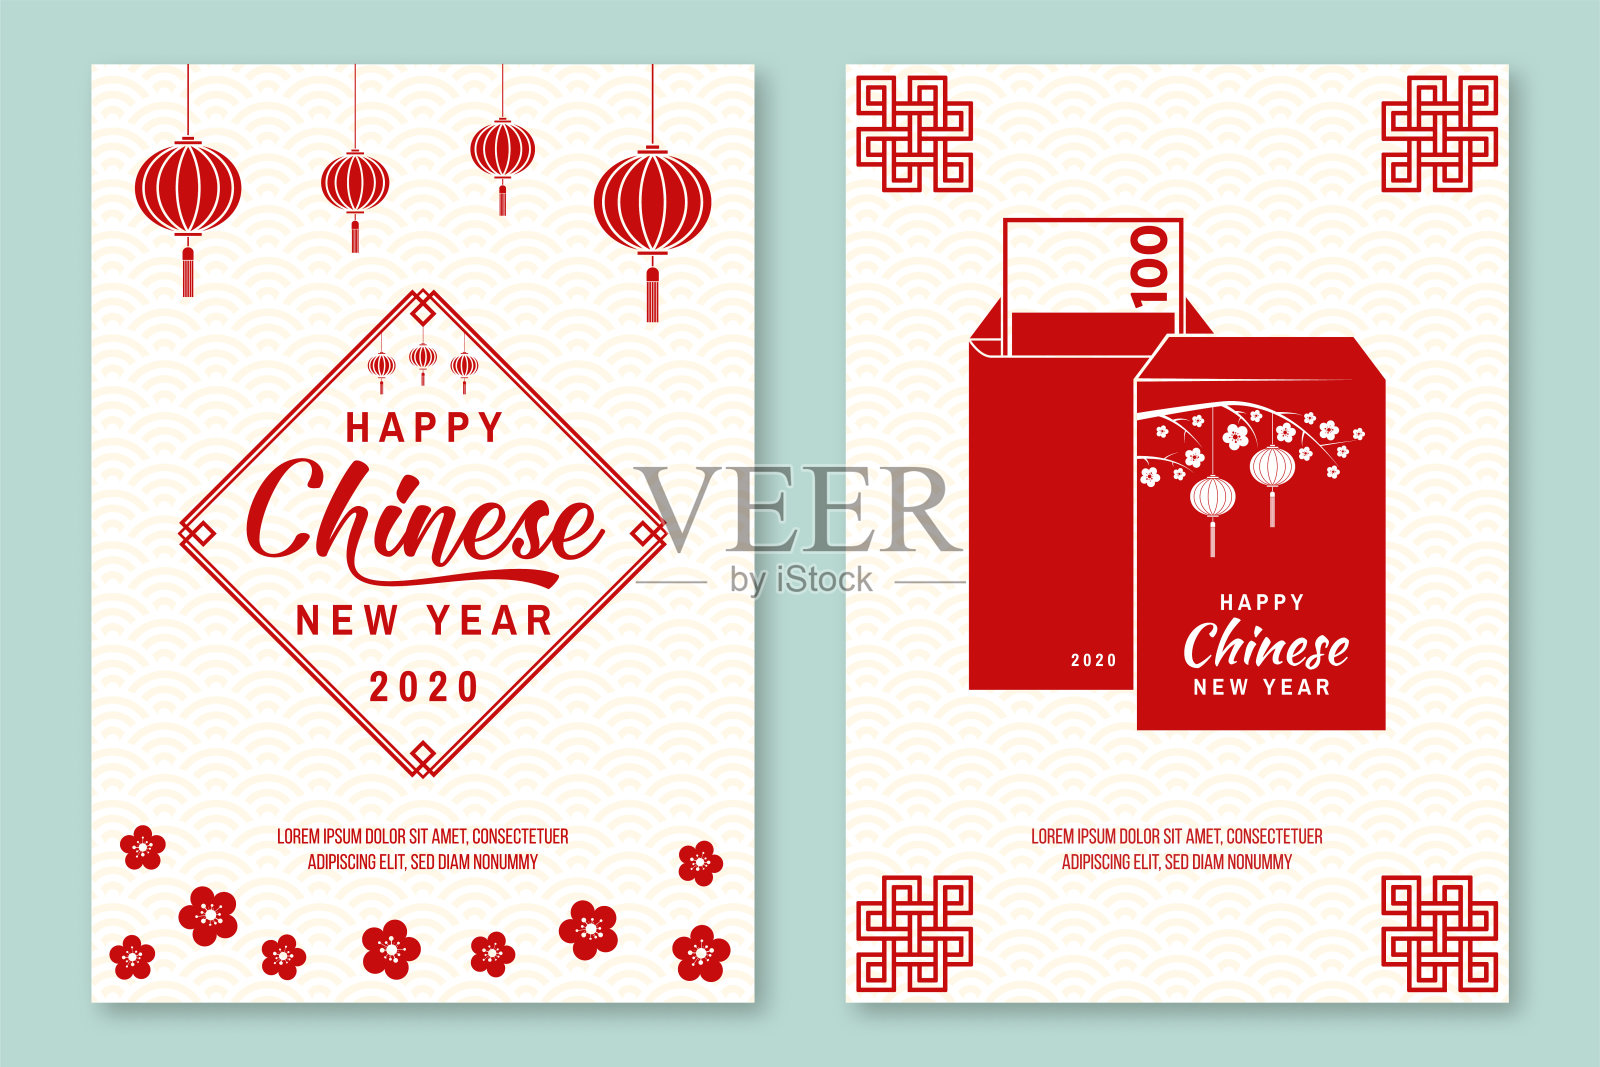 《2020年春节快乐》海报、传单、贺卡贺年经典明信片。中国鼠年贺卡。横幅网站模板。设计模板素材